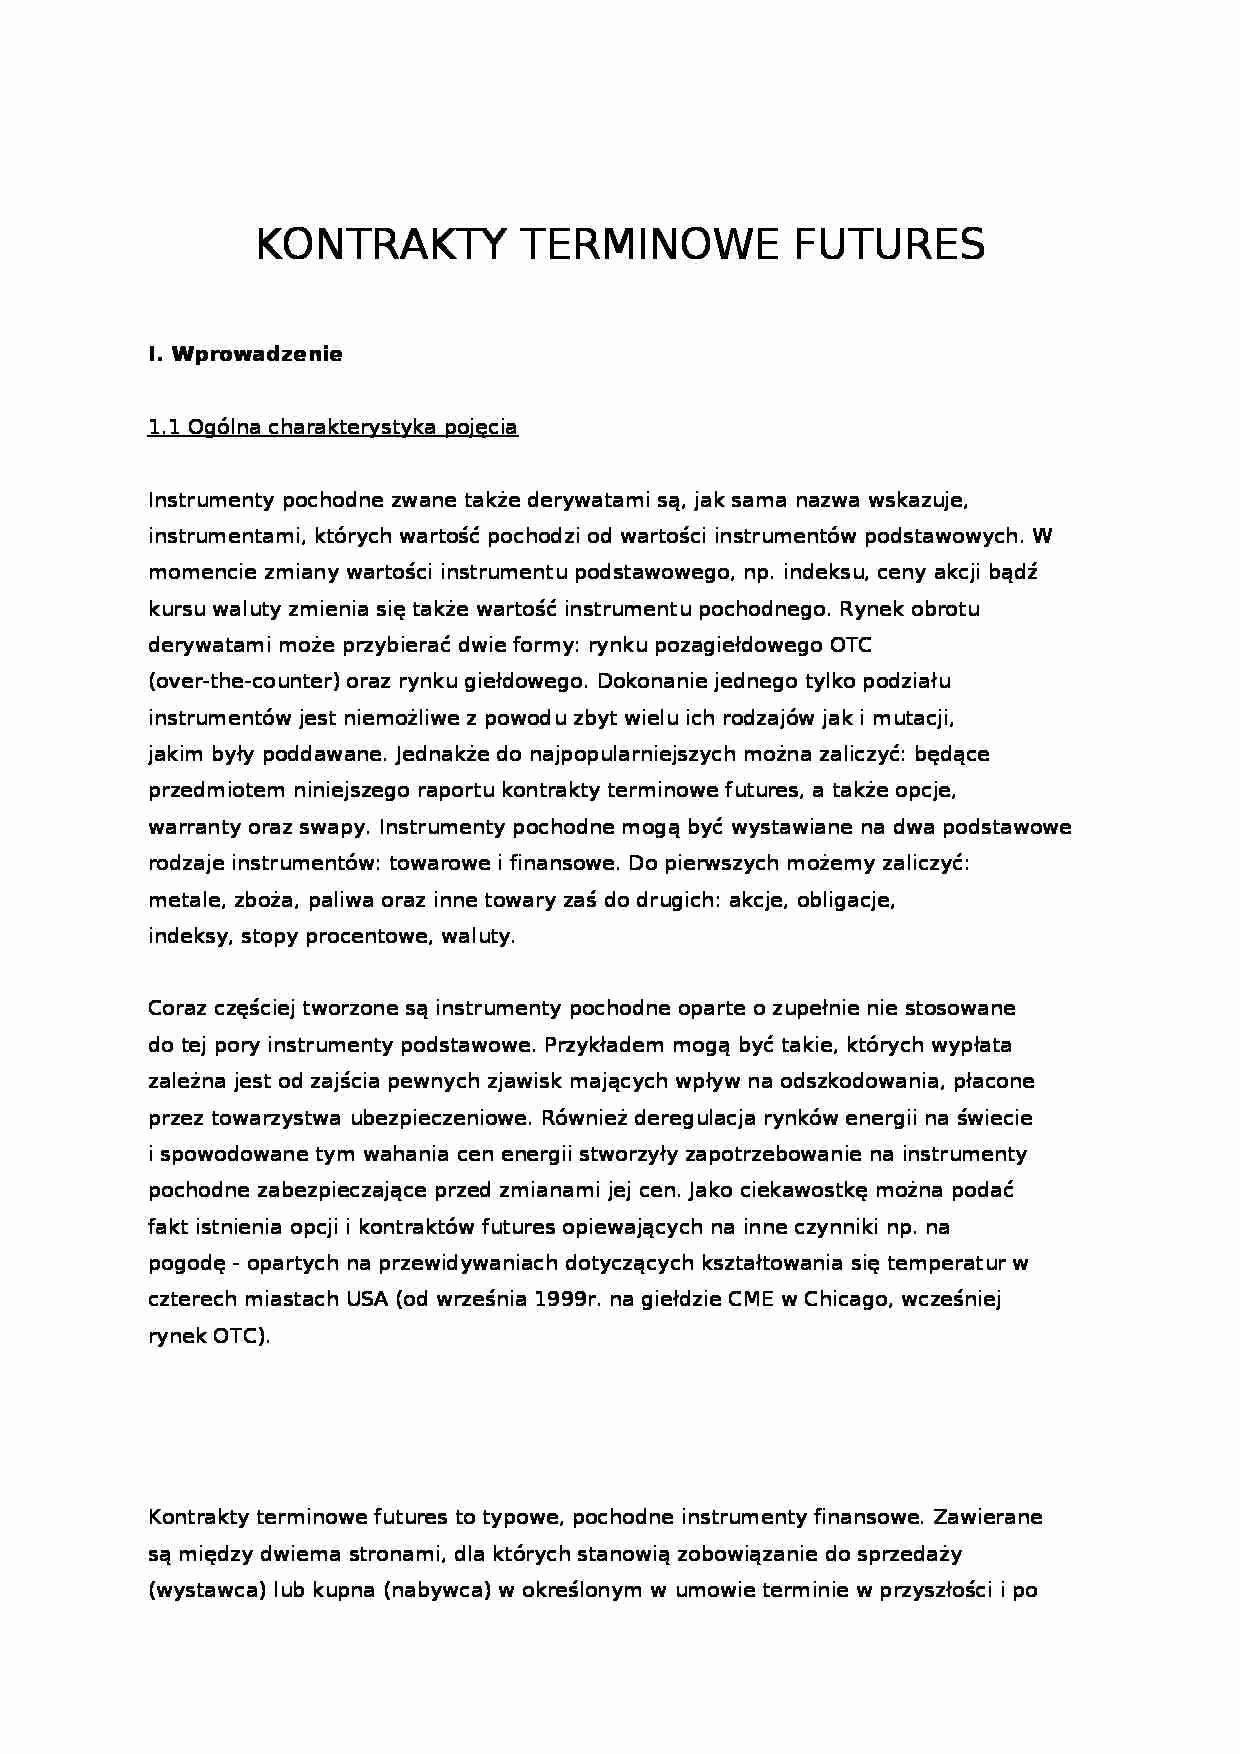 Kontrakty terminowe - futures - strona 1